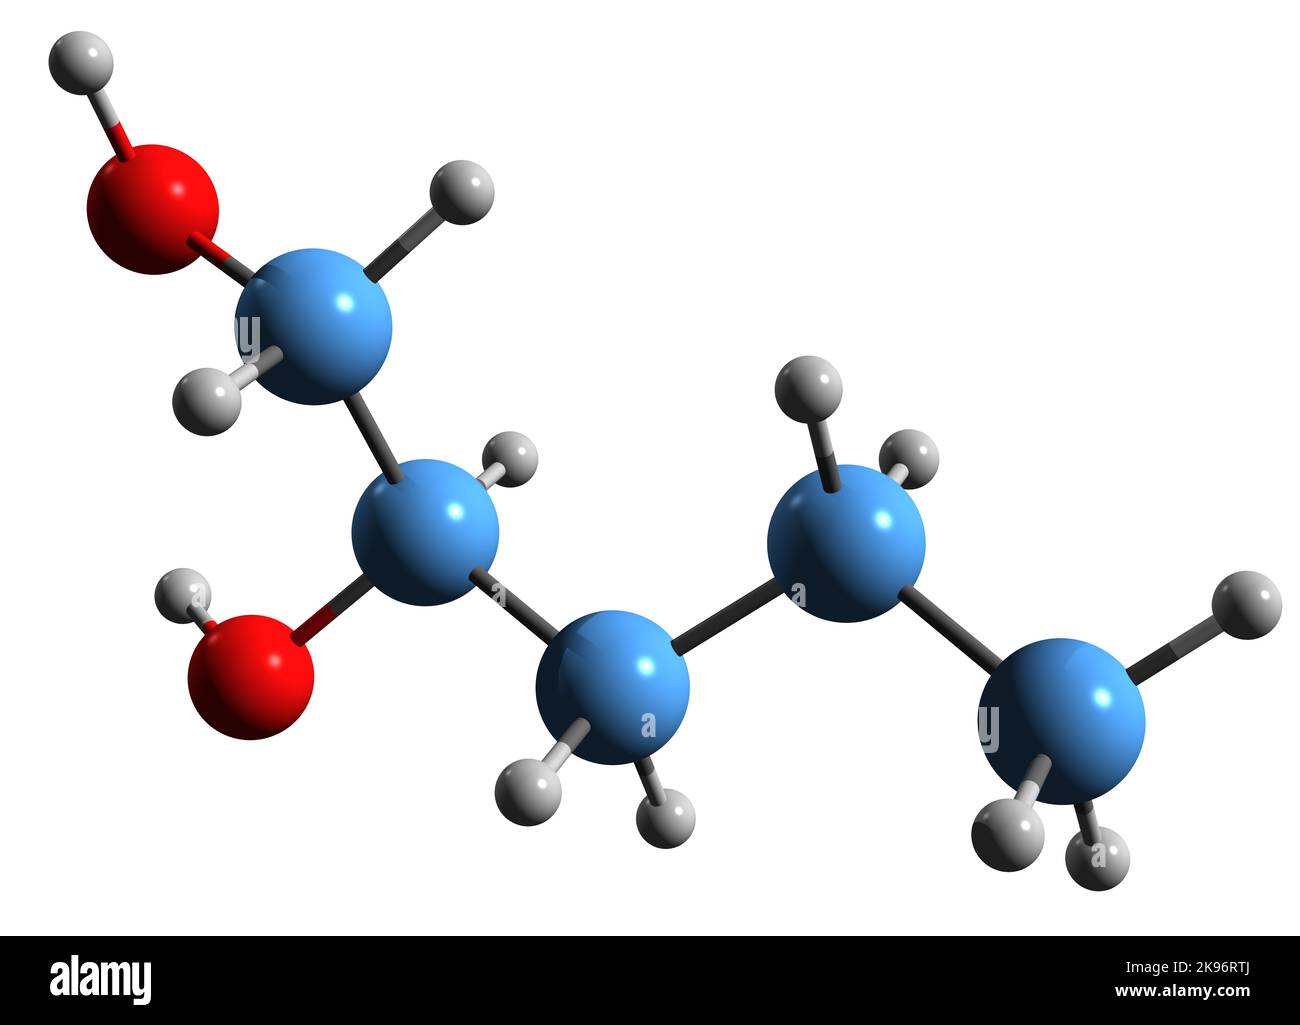 Molecola di glicole propilenico (1,2-propandiolo). Usato come solvente in  farmaci farmaceutici, come additivo alimentare, in soluzioni di  sghiacciamento, ecc formula scheletrica Immagine e Vettoriale - Alamy